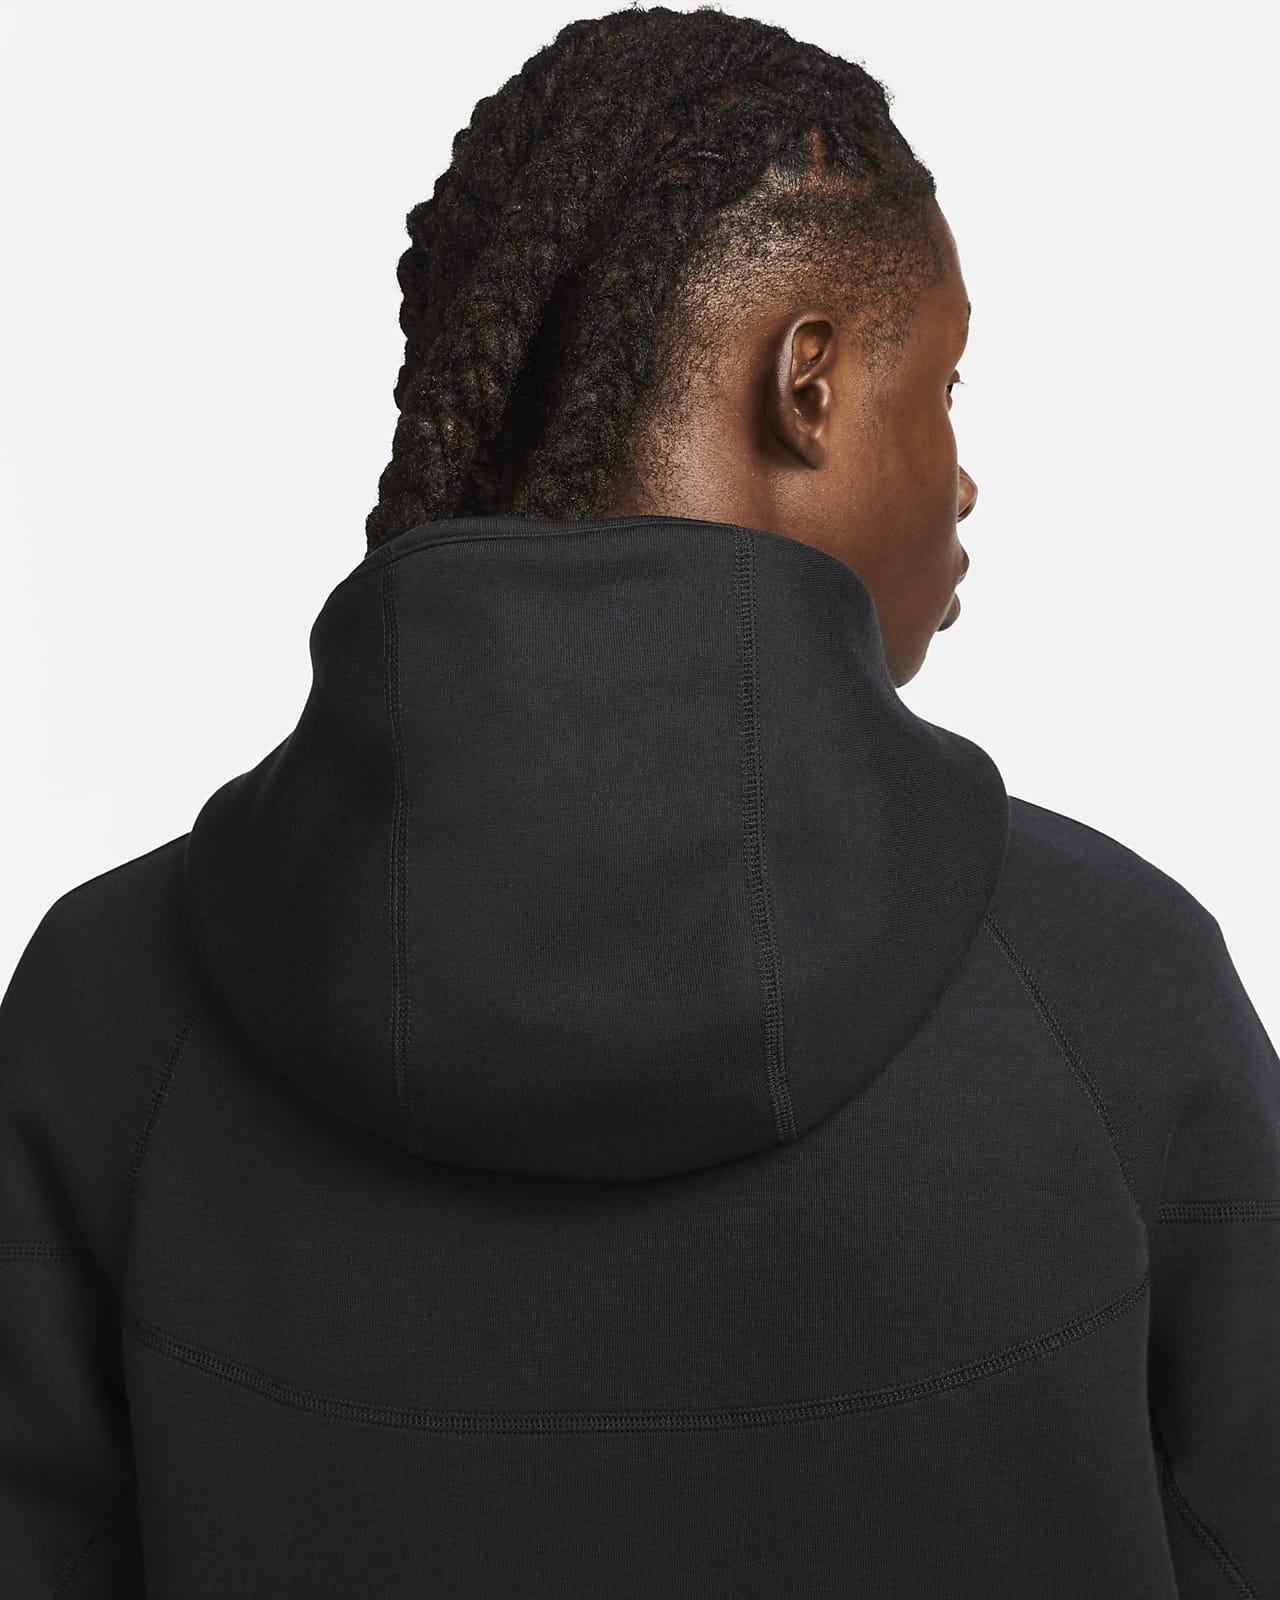 Nike Sportswear Tech Fleece Full-Zip Hoodie Black Men's - US